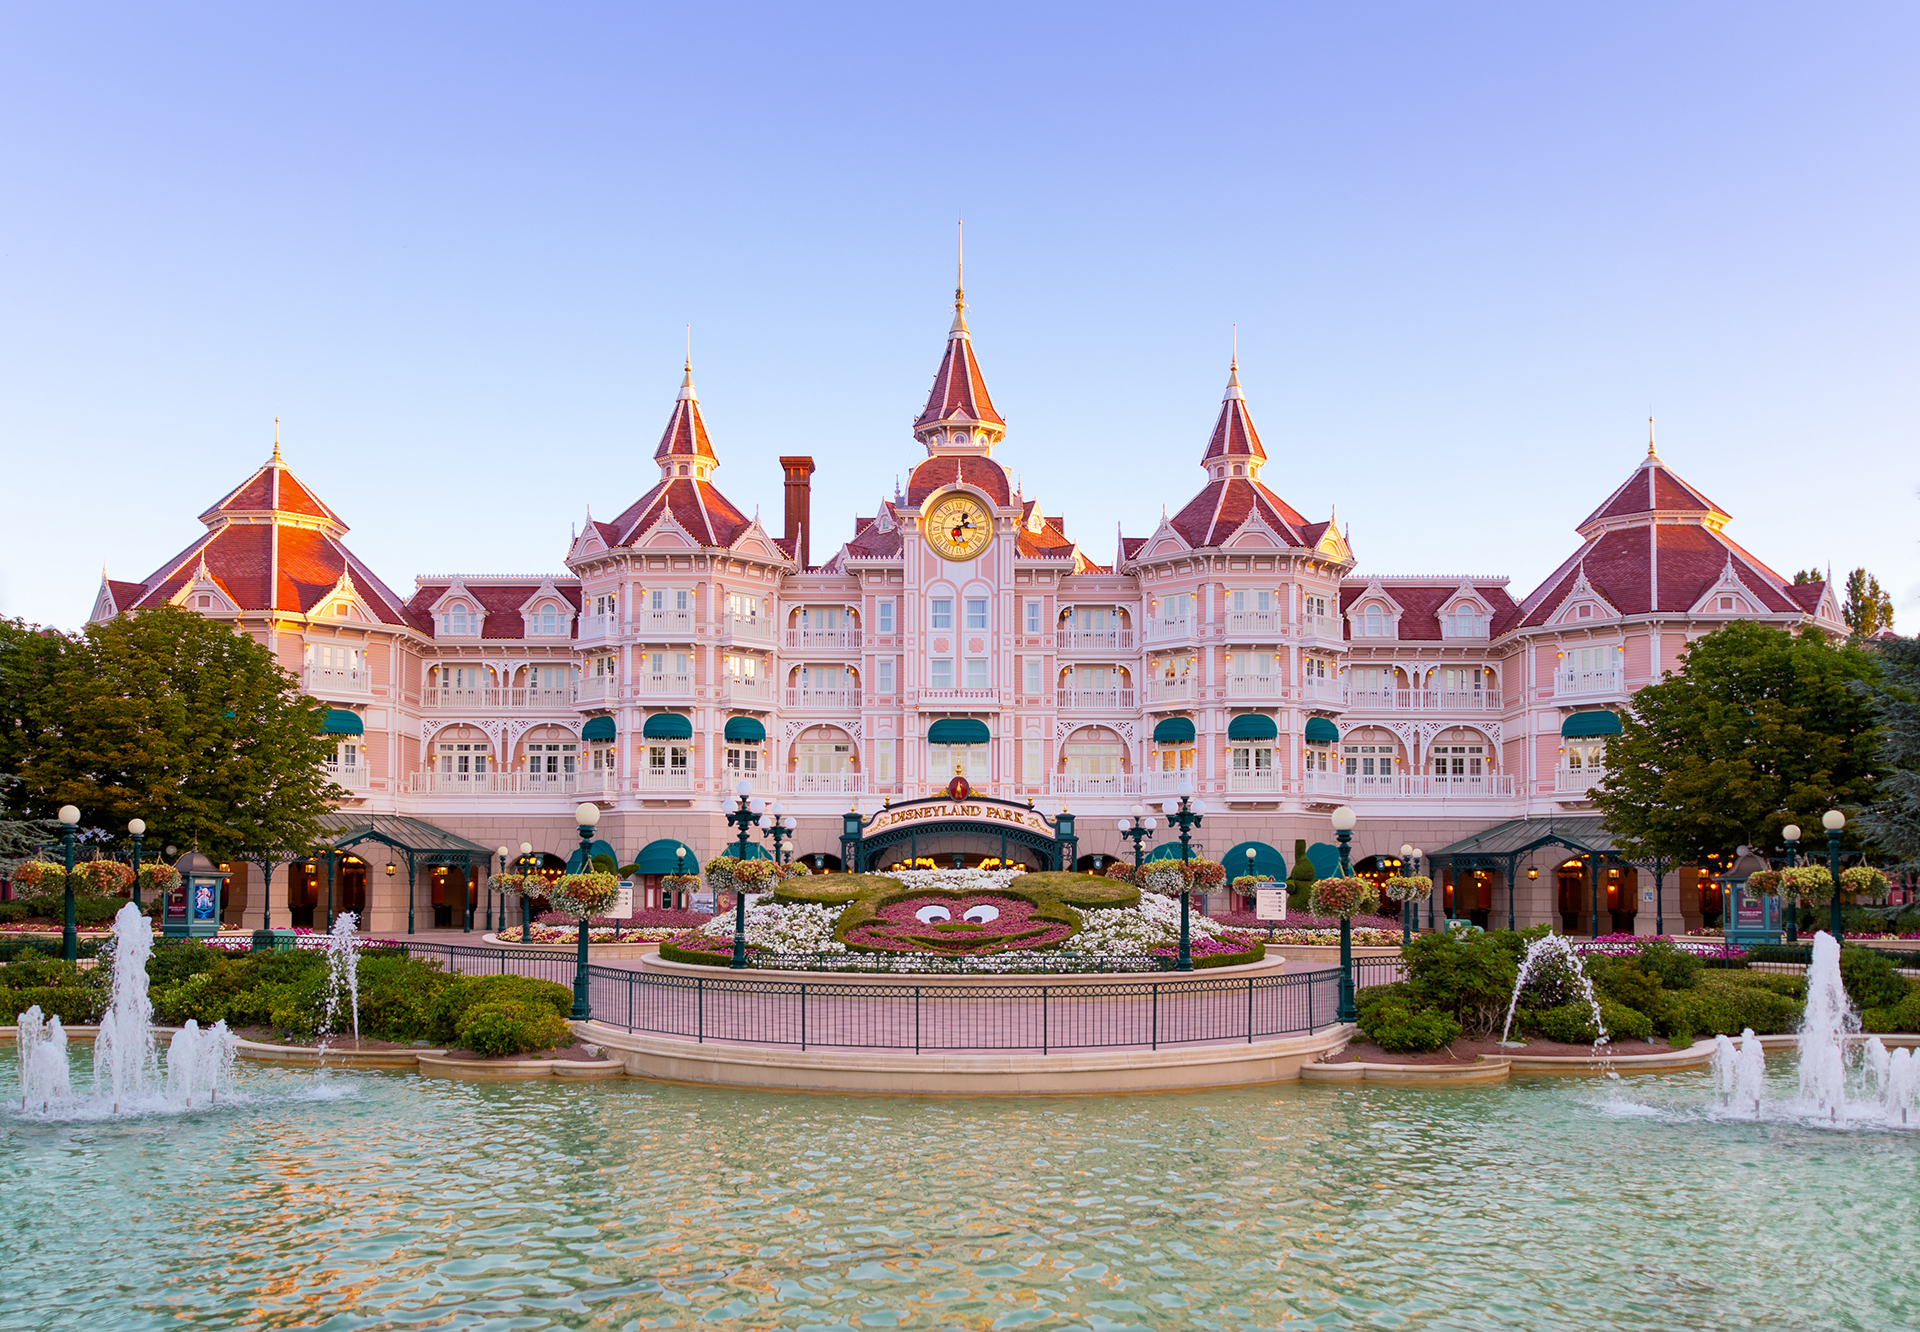 How to Get Your Walt Disney Frozen Fix at Disneyland Resort